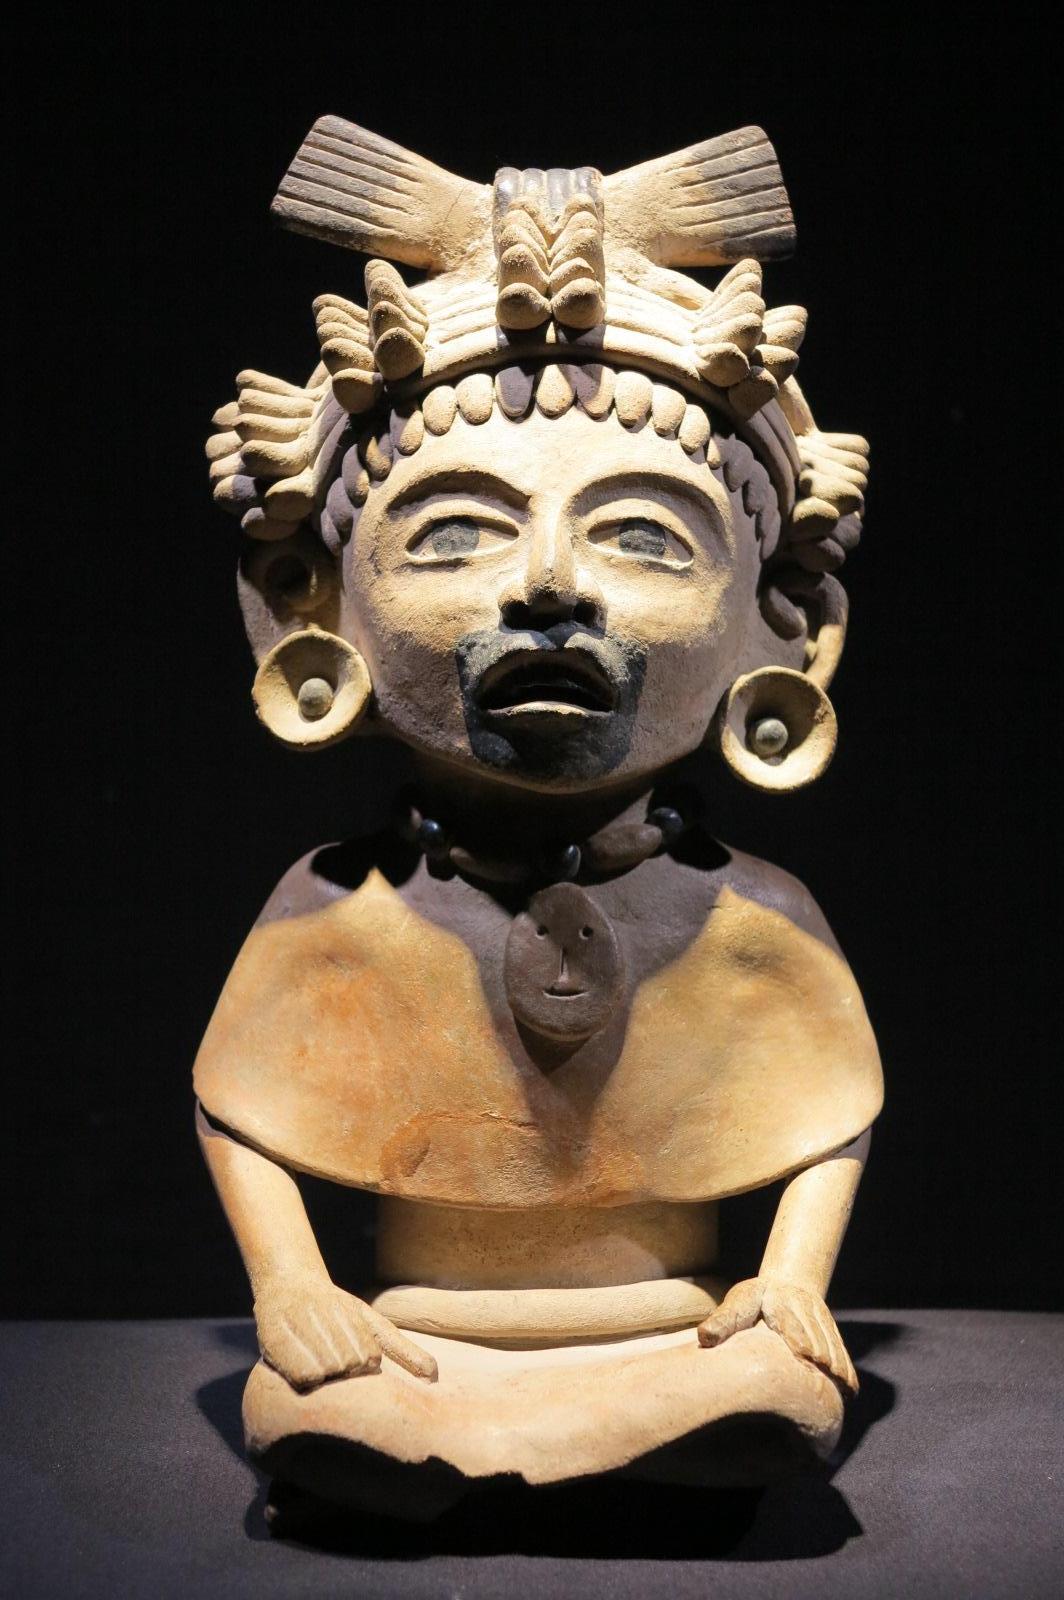 Figur eines singenden Kriegers
Keramik mit Bitumenakzenten
300-600 n. Chr. (Klassische Periode)
Mexiko, Veracruz, möglicherweise Nopiloa
Veracruz Kultur

Präkolumbisch, Mexiko, Vera Cruz Kultur, auch bekannt als Totonac (Totonaca), Remojadas, ca.